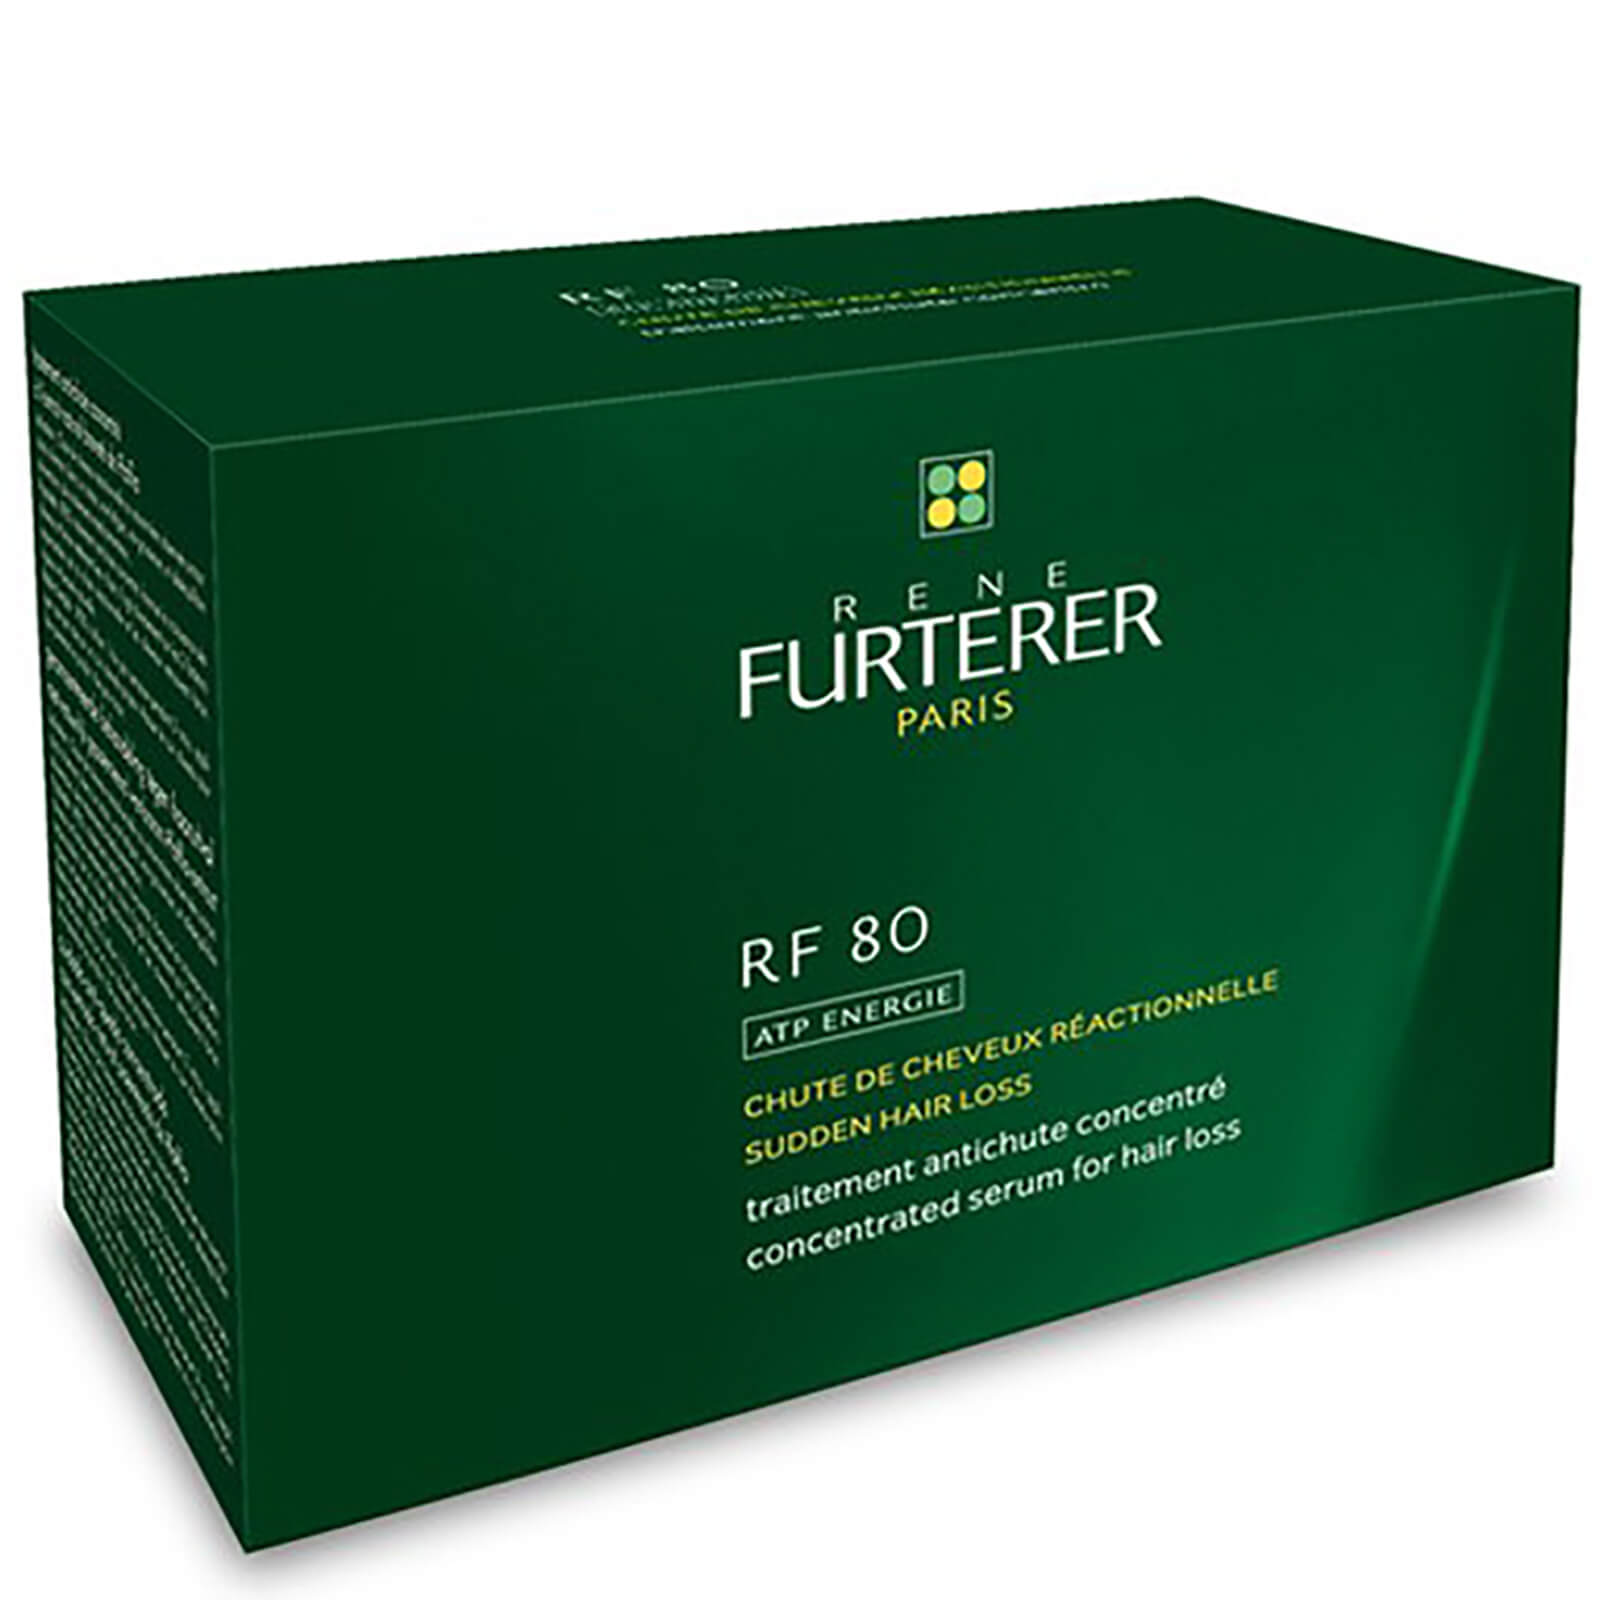 Tratamiento concentrado para la caída del cabello RF 80 de René Furterer (12 ampollas)